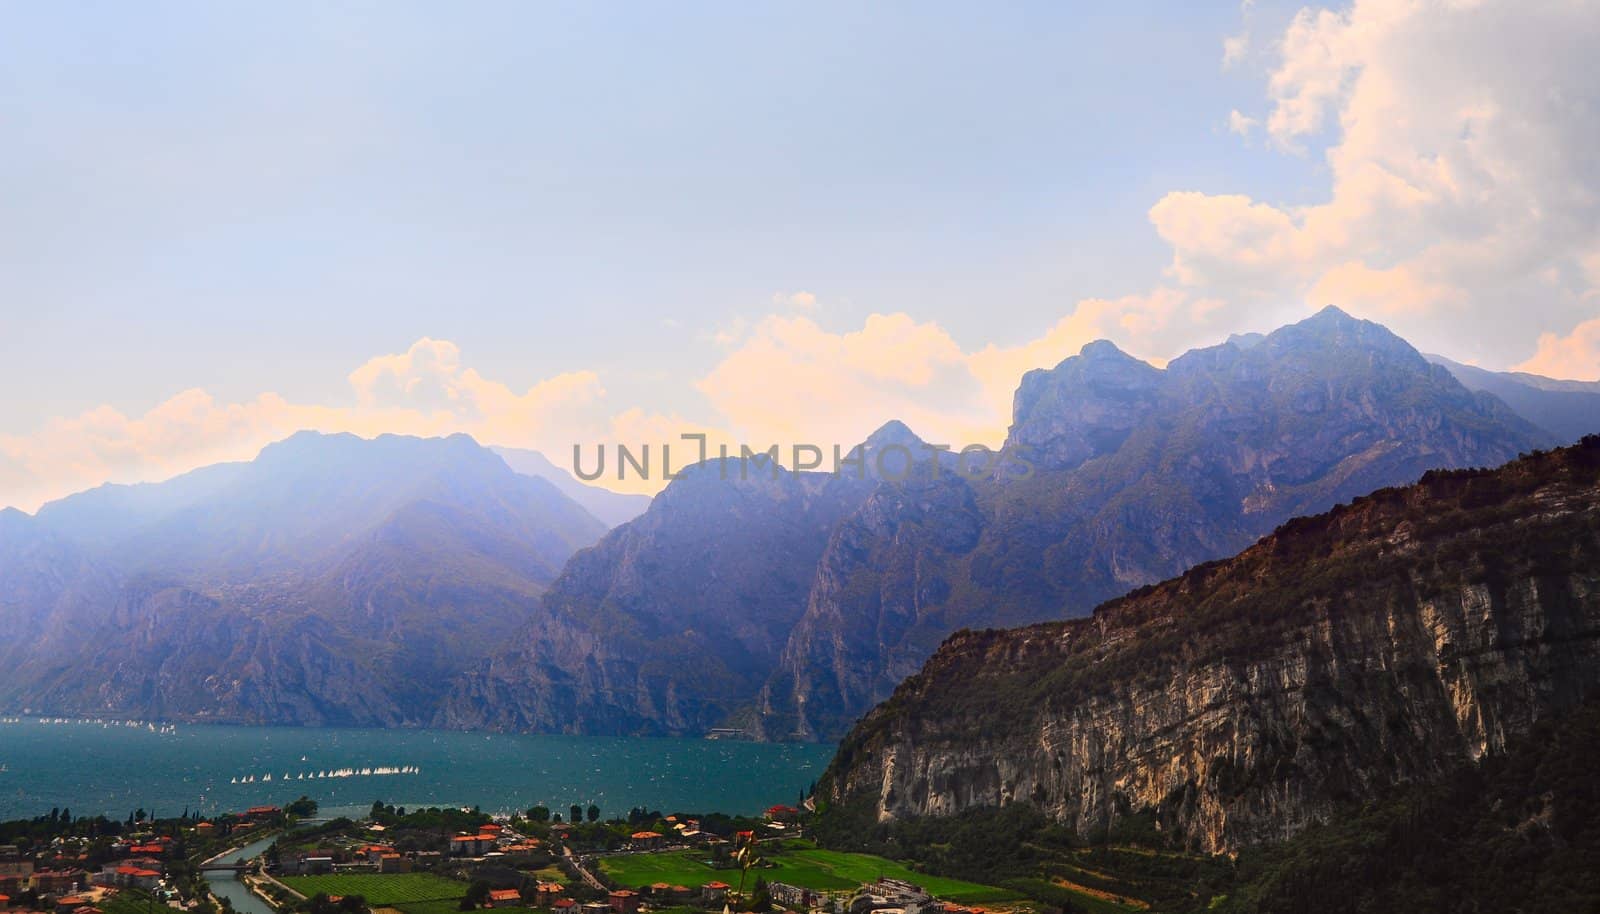 Landscape With The Lake Lago Di Garda, Italy